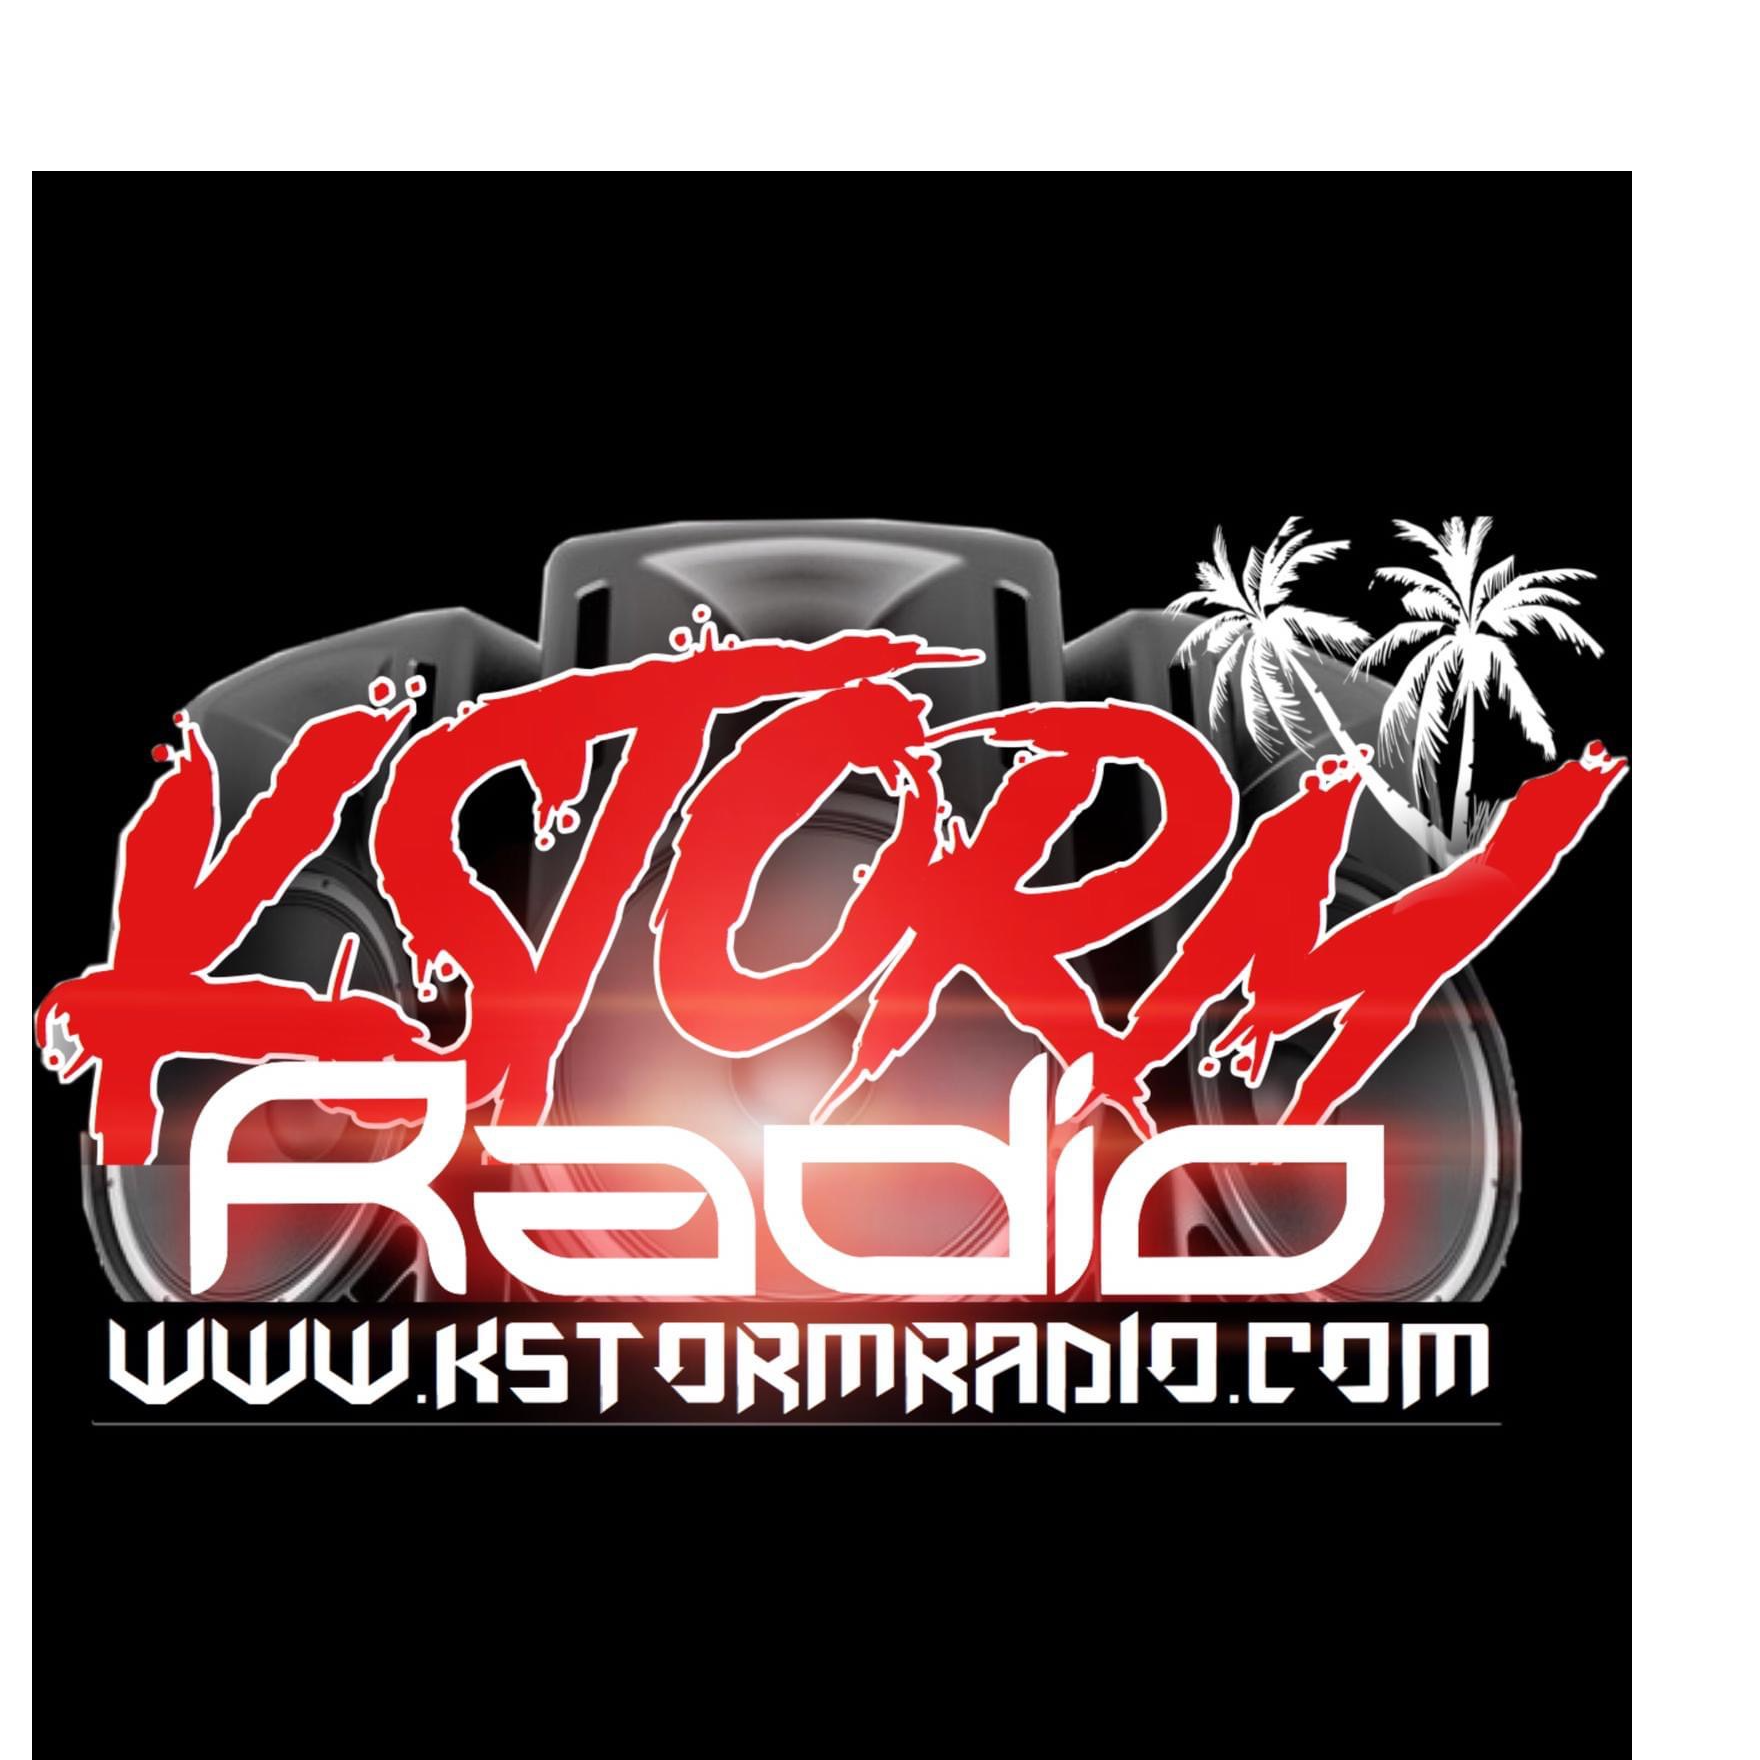 K Storm Radio